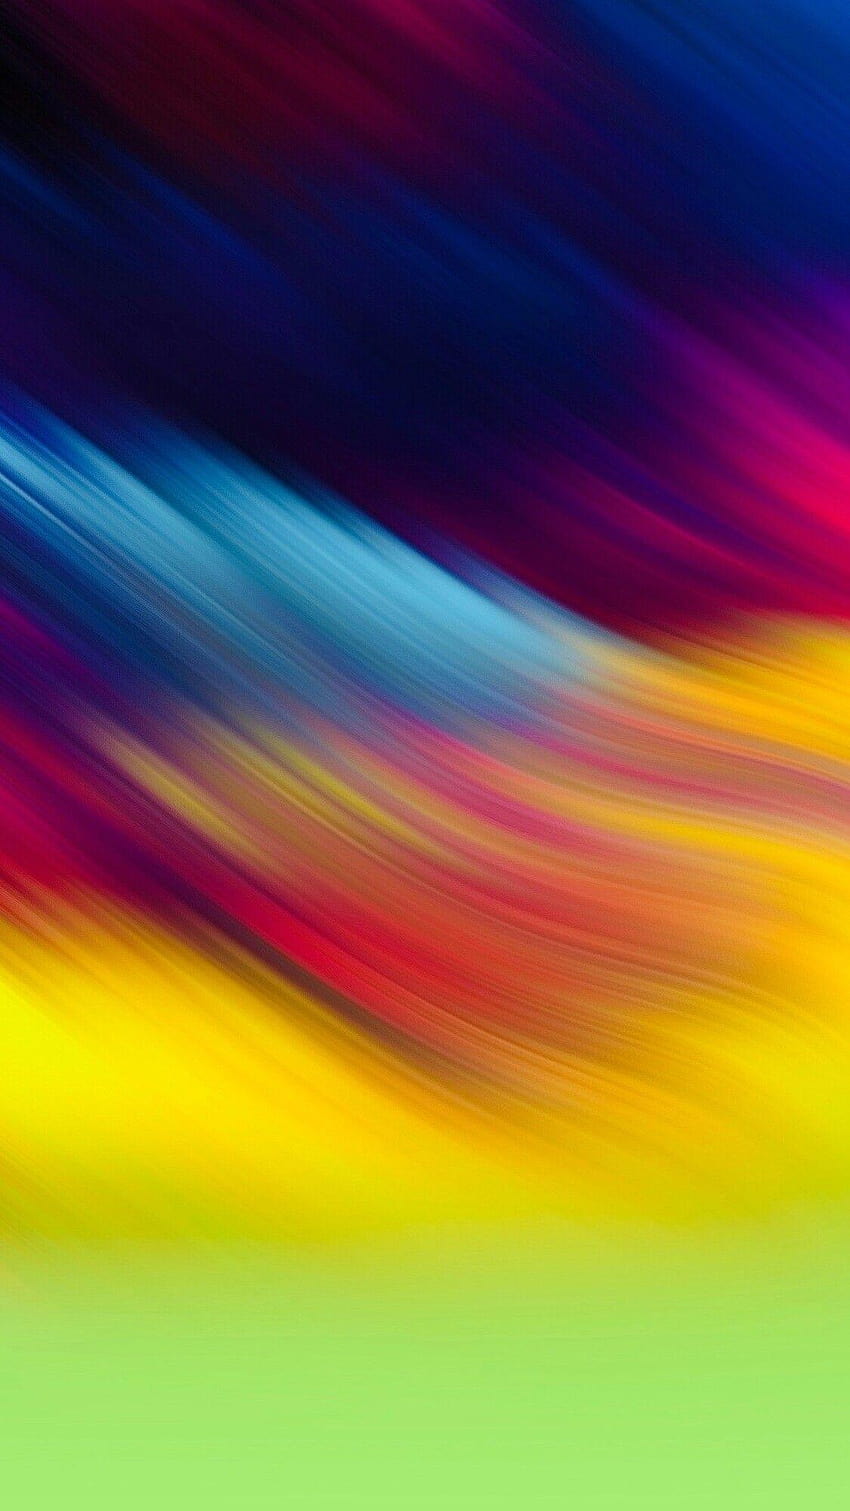 Multi color in 2019, mobile colour HD phone wallpaper